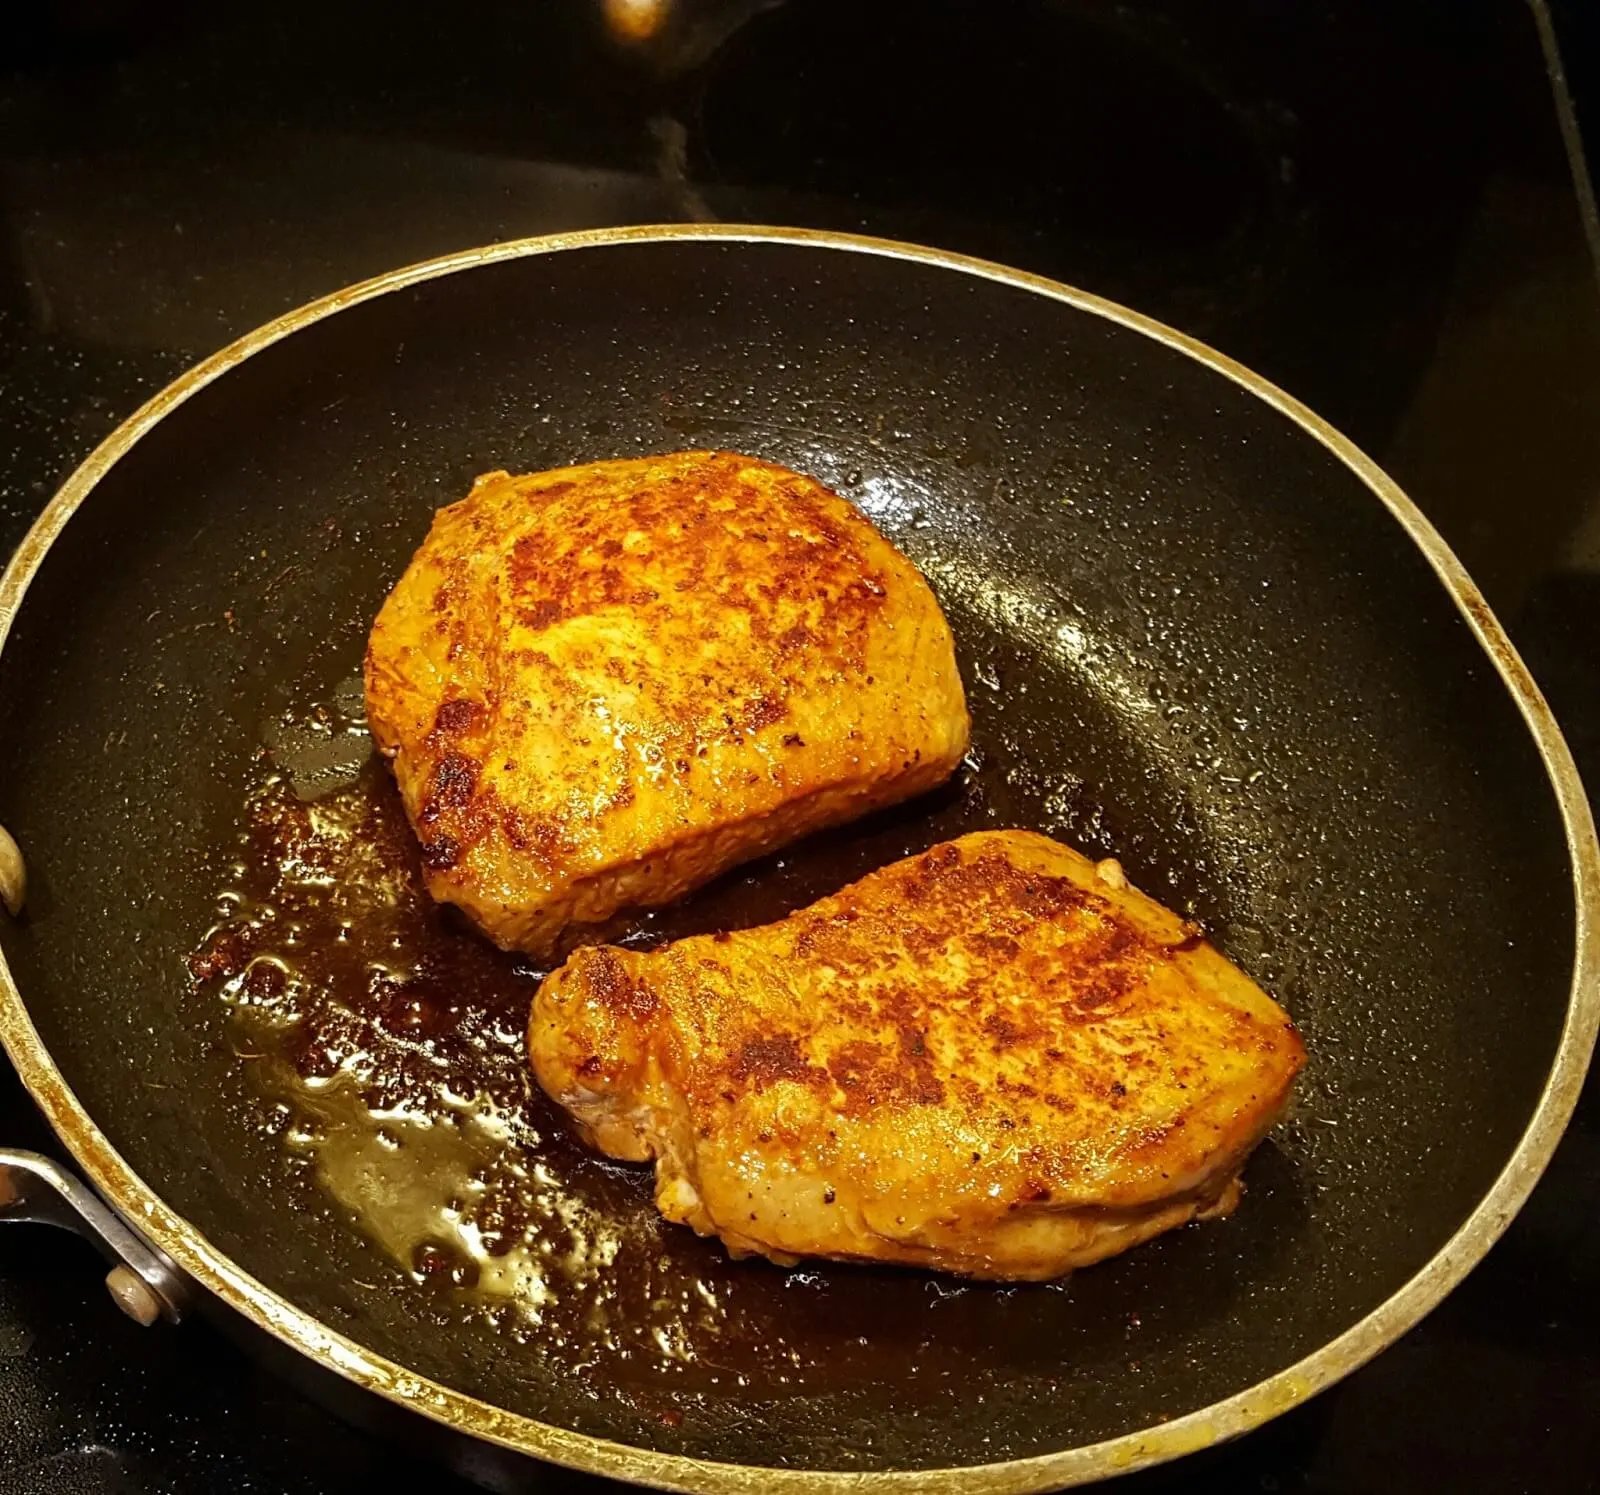 Pan searing pork chops